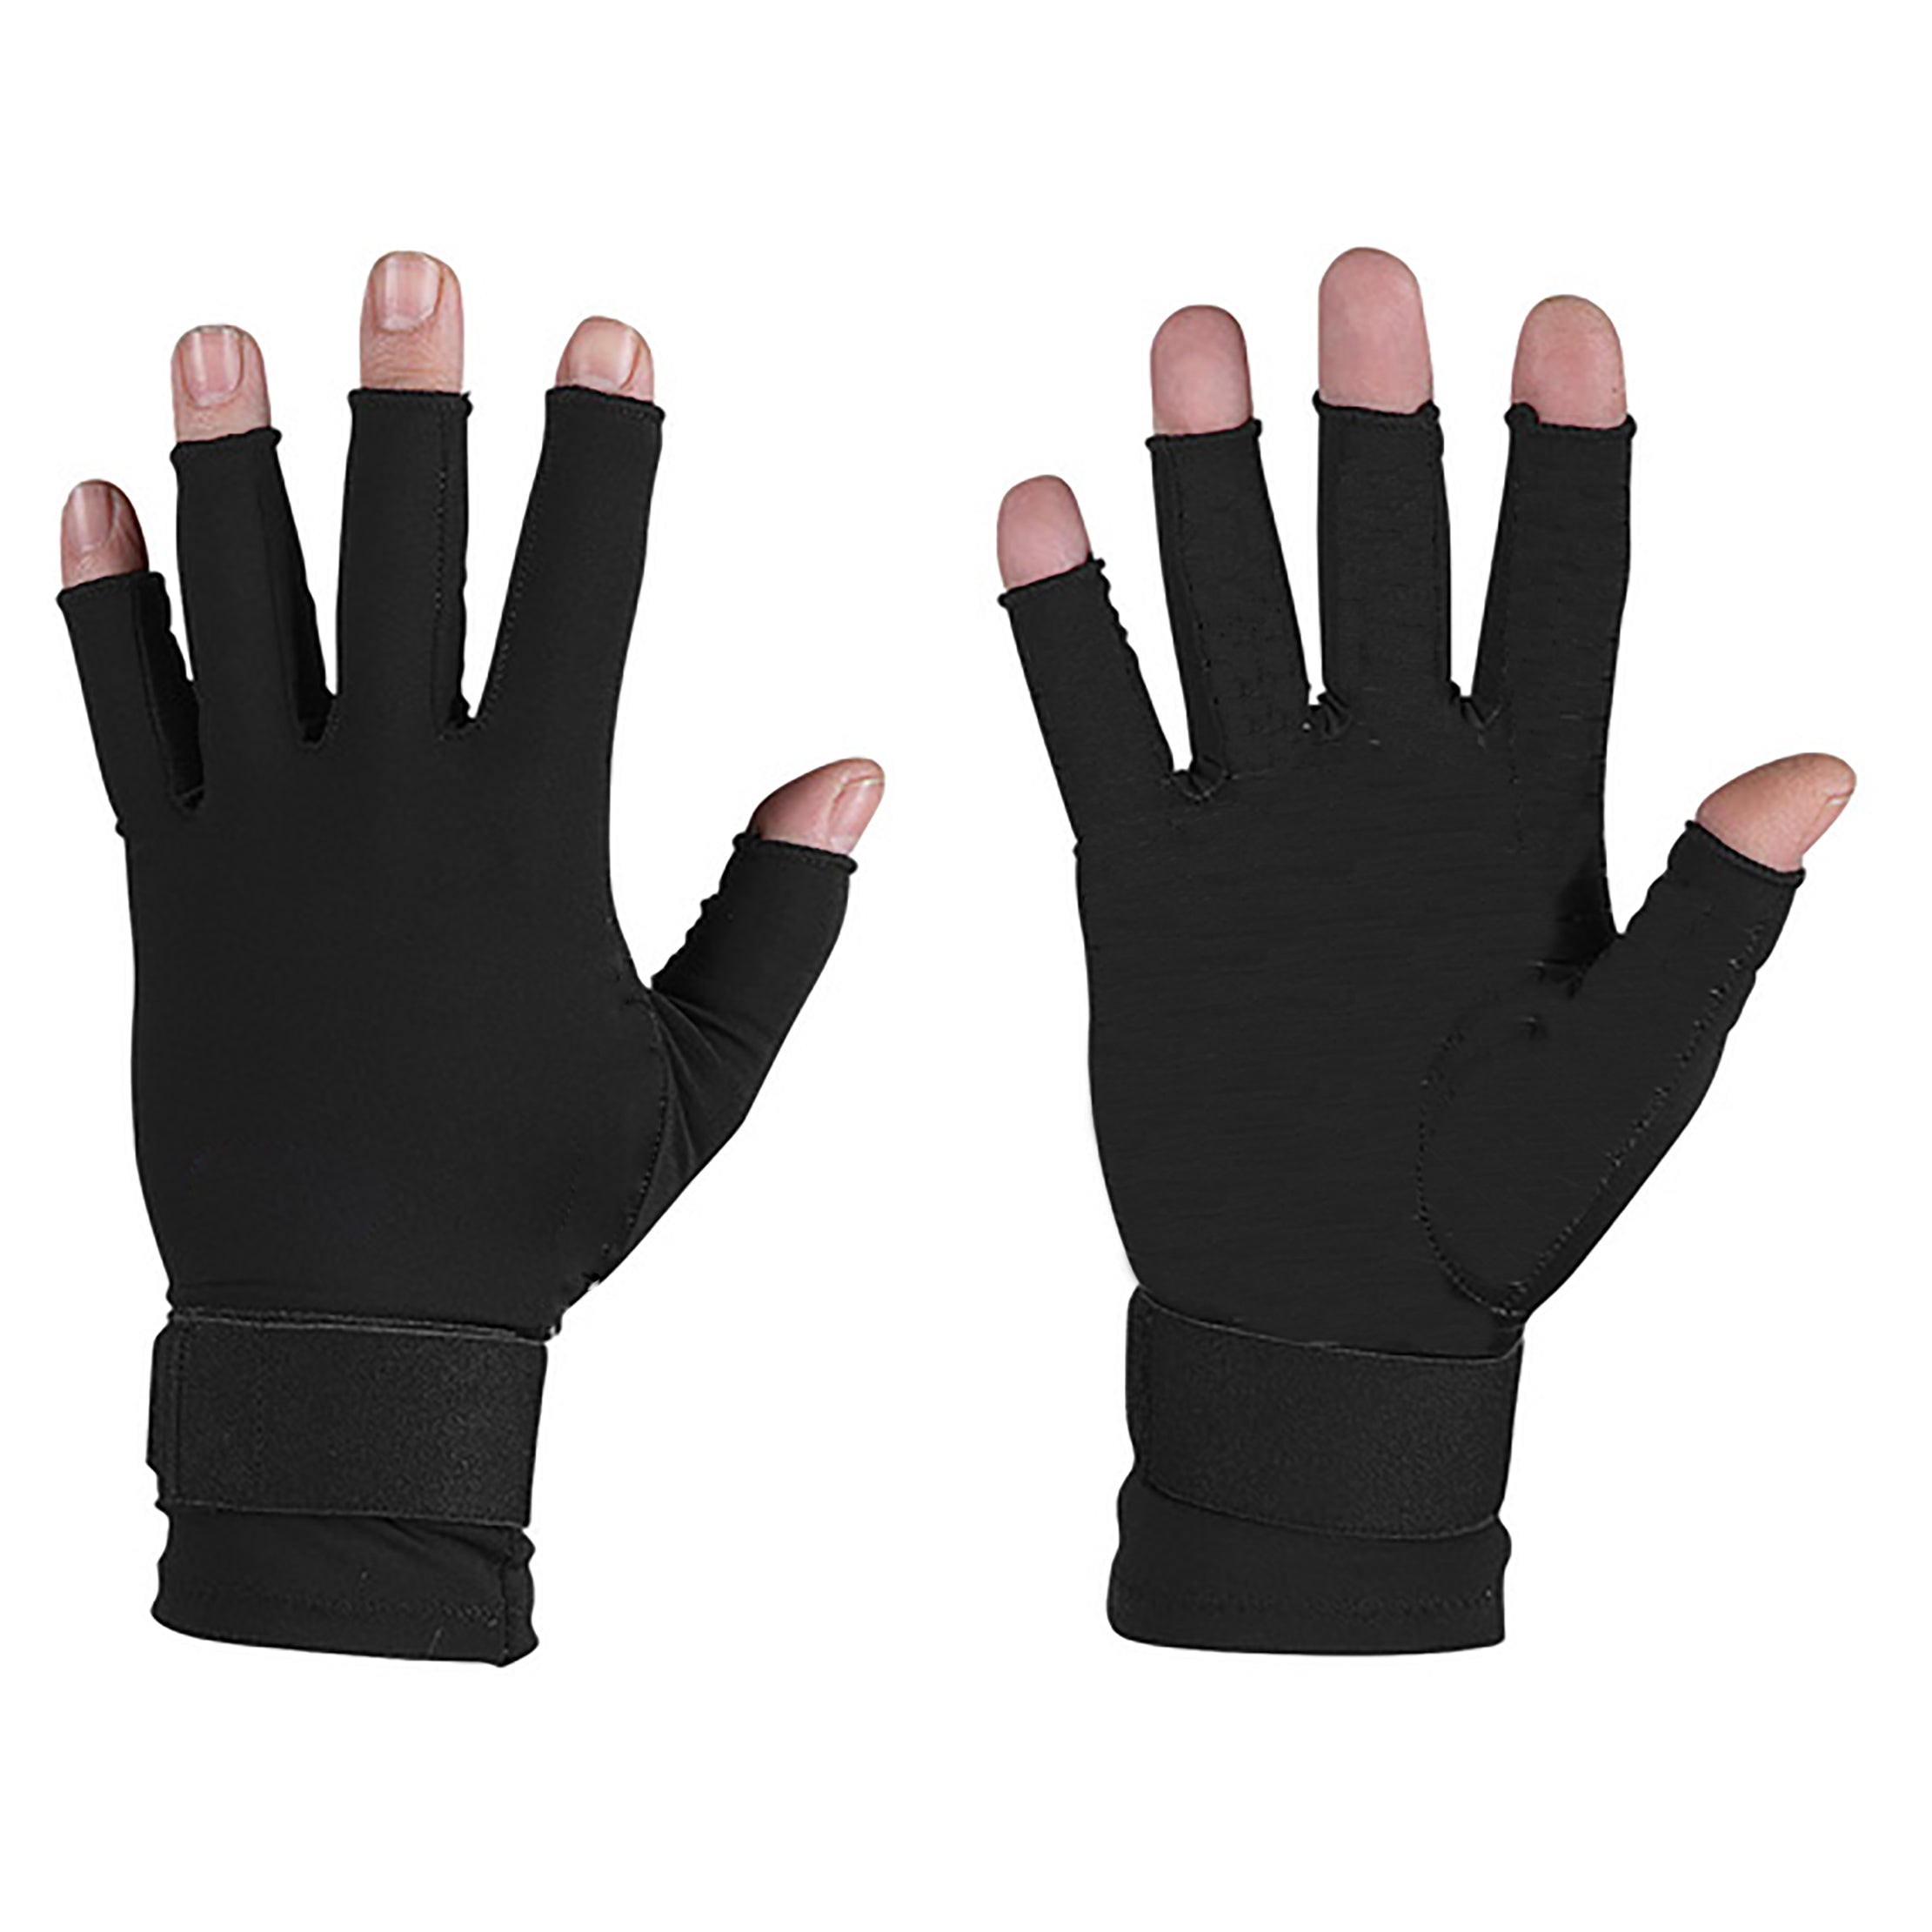 Infrared Arthritis Gloves Fingerless / Half Finger